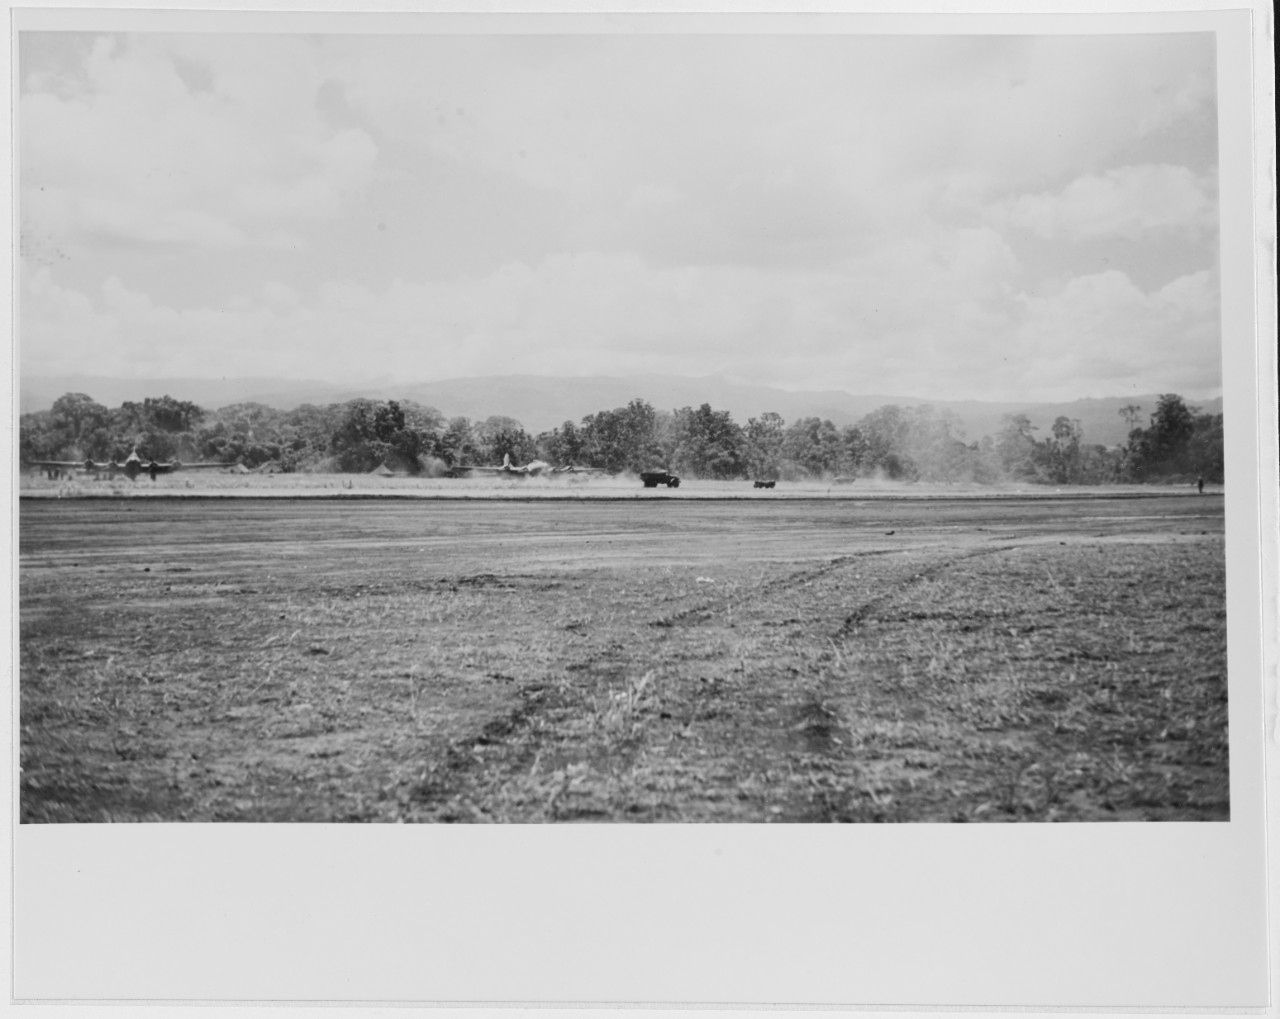 Henderson Field, Guadalcanal